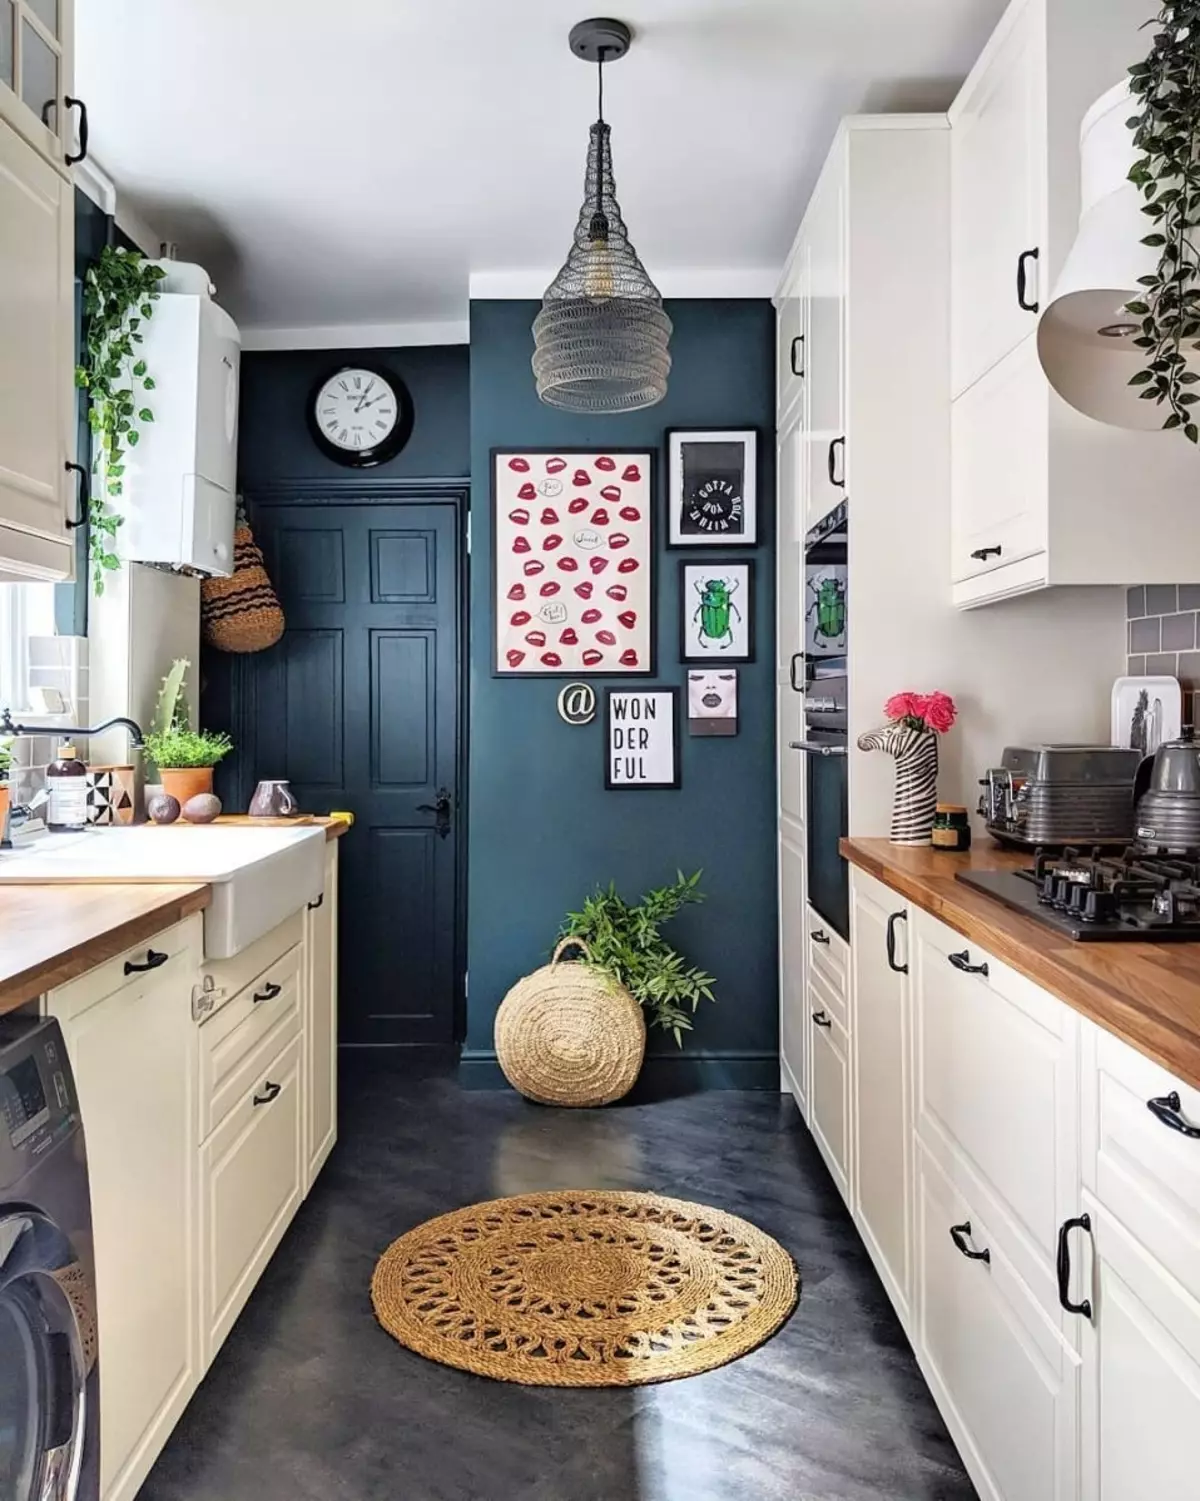 چگونه یک آشپزخانه کوچک را تجهیز کنیم؟ 91 عکس تصمیمات آشپزخانه جالب، ایده هایی برای ایجاد آشپزخانه کاربردی کوچک 9521_40